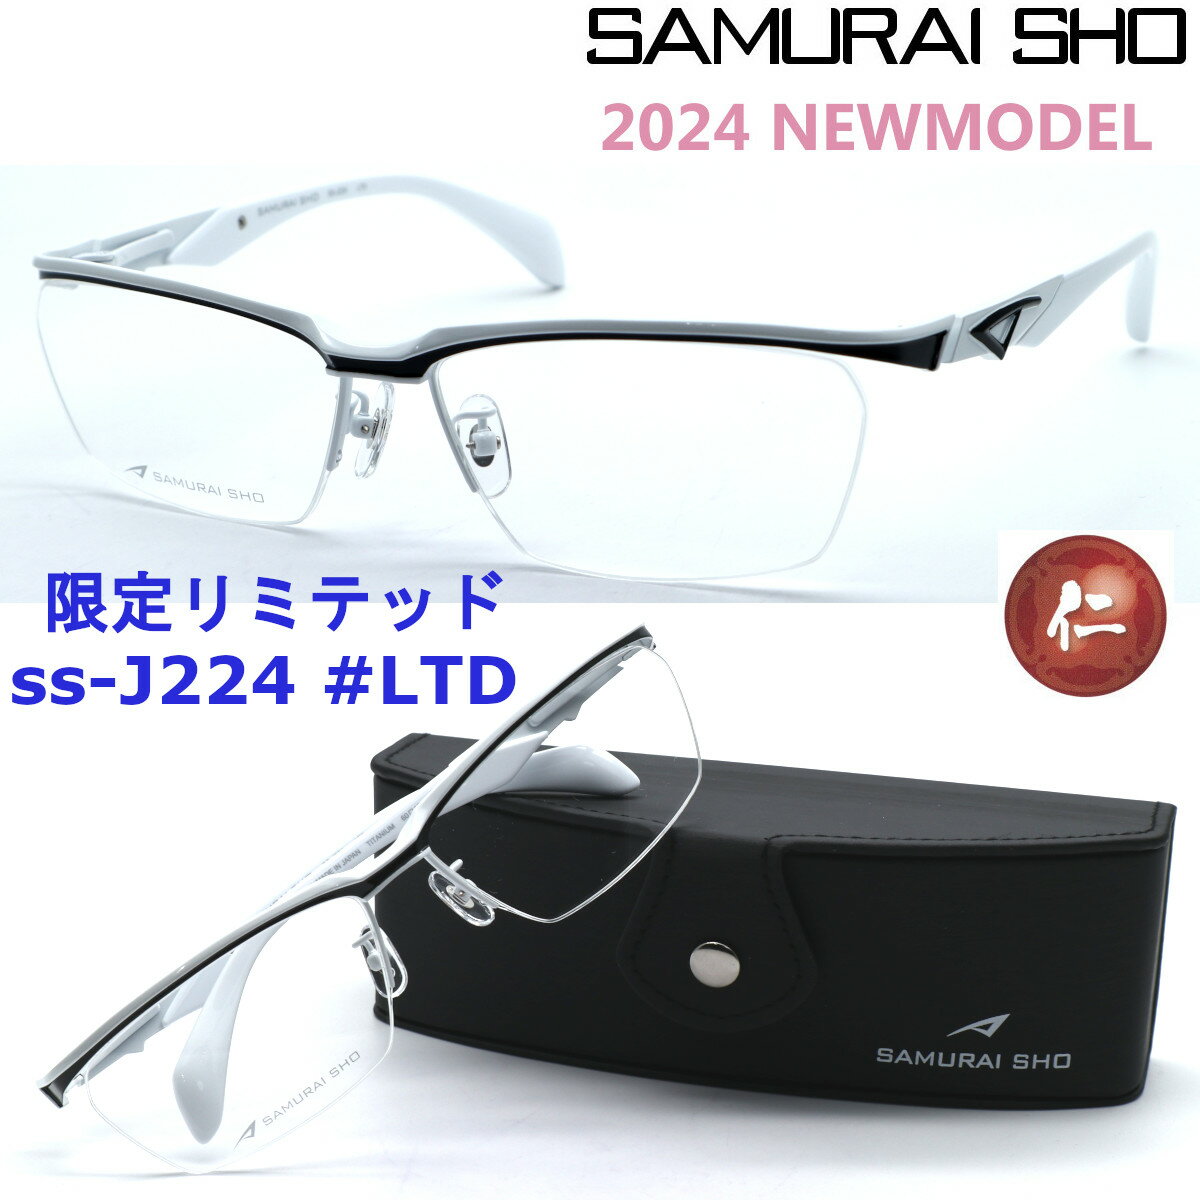 プレミア生産終了モデル 正規レイバン日本最大級の品揃え レイバン メガネ フレーム Ray-Ban RX7118F 5714 伊達メガネ 度付き ブルーライト カット 眼鏡 丸メガネ RayBan ラウンド